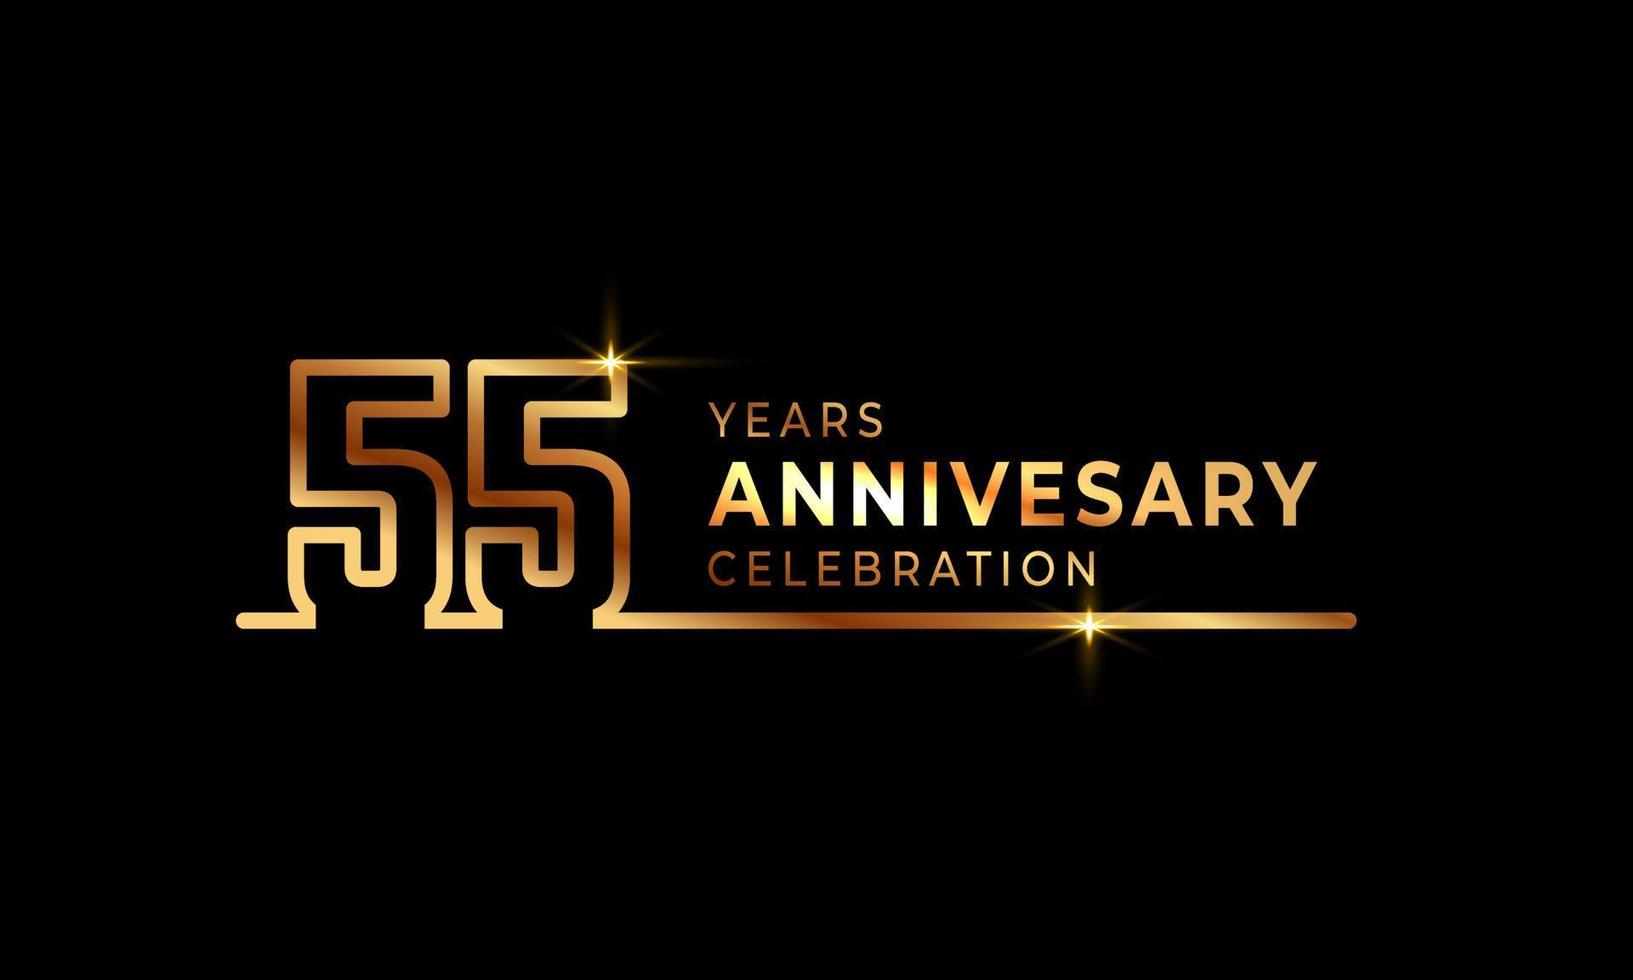 55-jarig jubileumviering logo met gouden gekleurde lettertypenummers gemaakt van één verbonden lijn voor feestgebeurtenis, bruiloft, wenskaart en uitnodiging geïsoleerd op donkere achtergrond vector